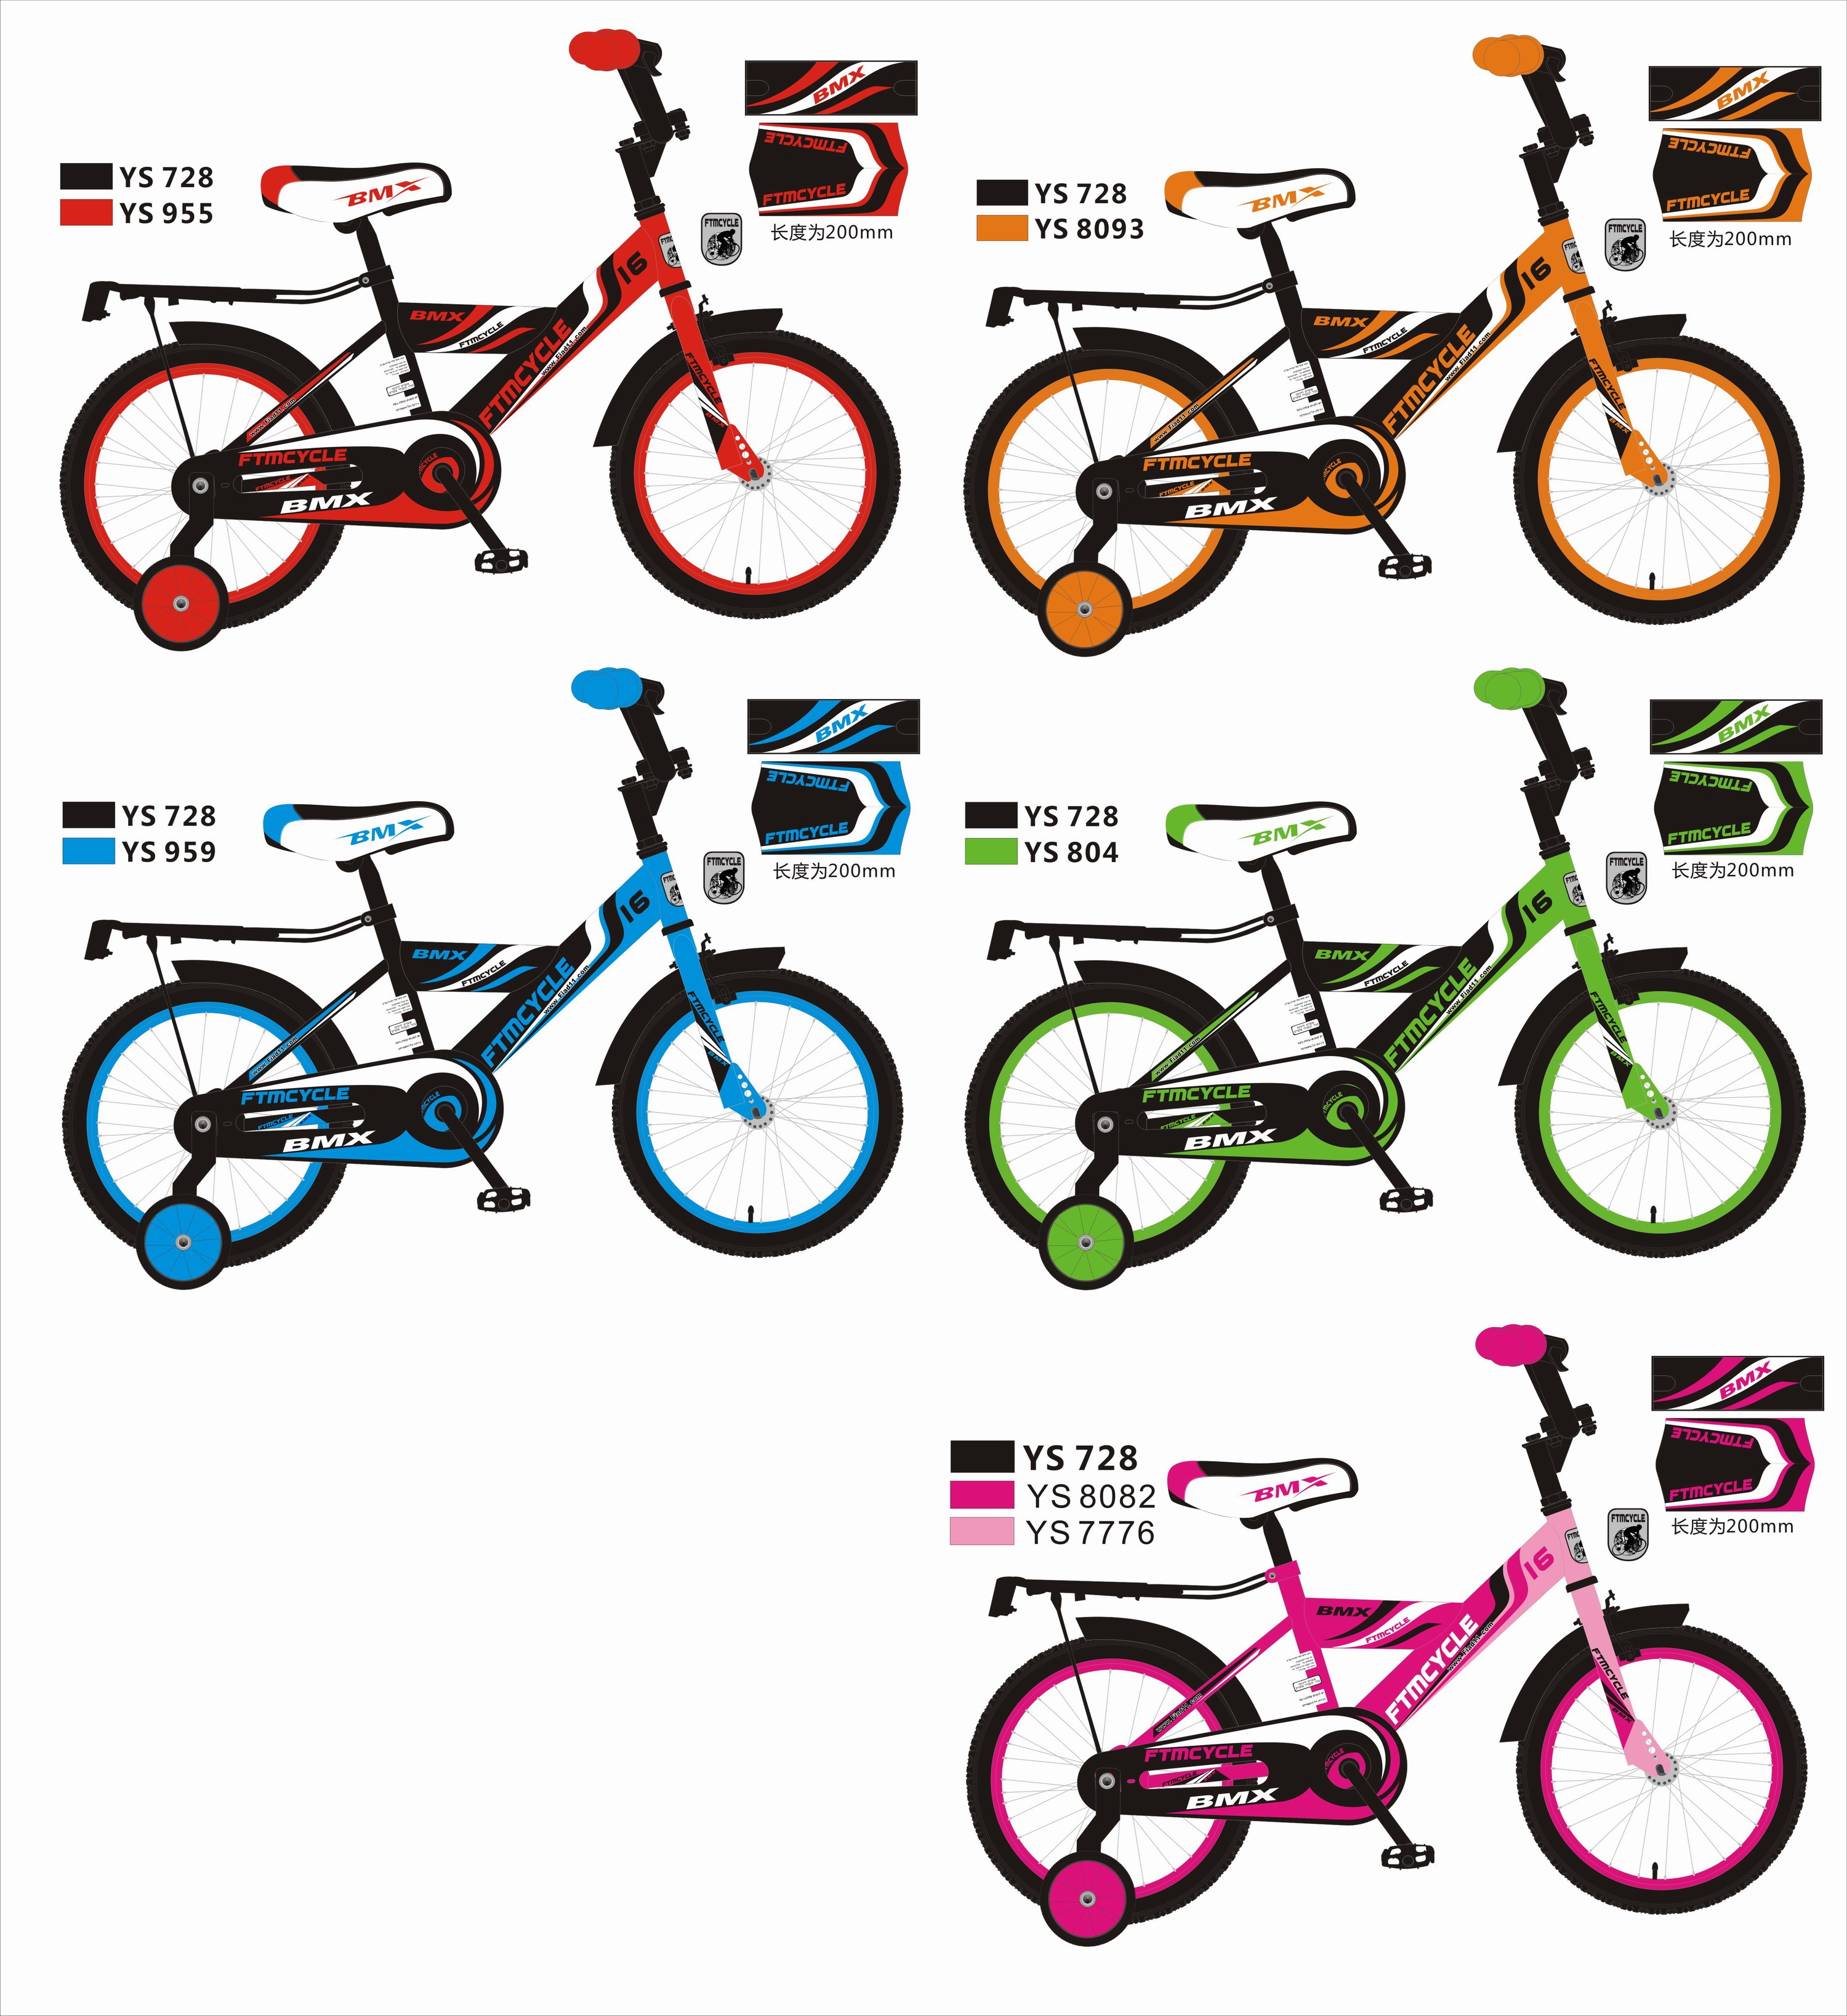 אופני BMX מידה 14" ב4 צבעים שונים מבית FIAD עכשיו ב299 שח ומשלוחים לכל הארץ